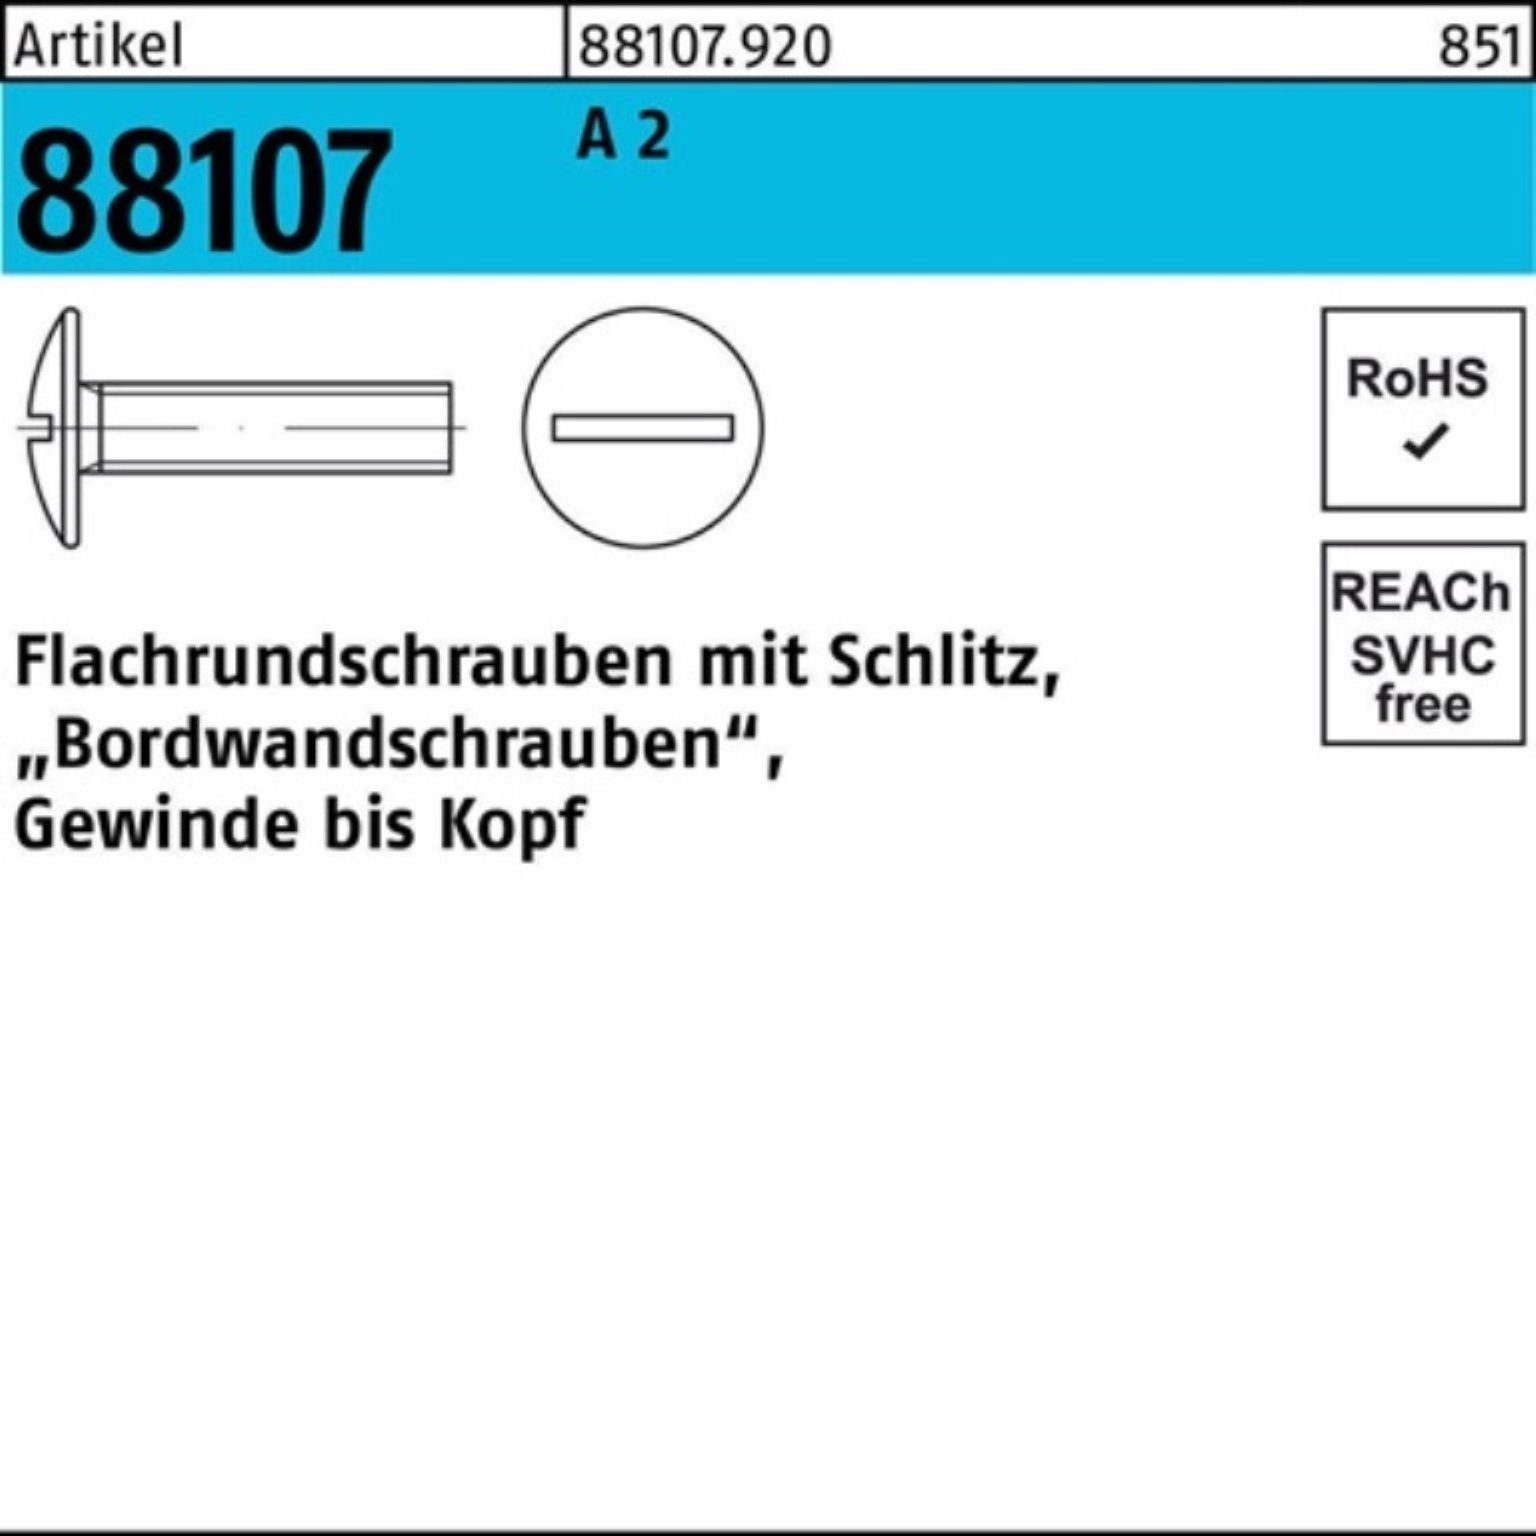 Reyher Schraube 100er Flachrundschraube Stück Pack 2 M8x 88107 Schlitz R 60 A VG 100